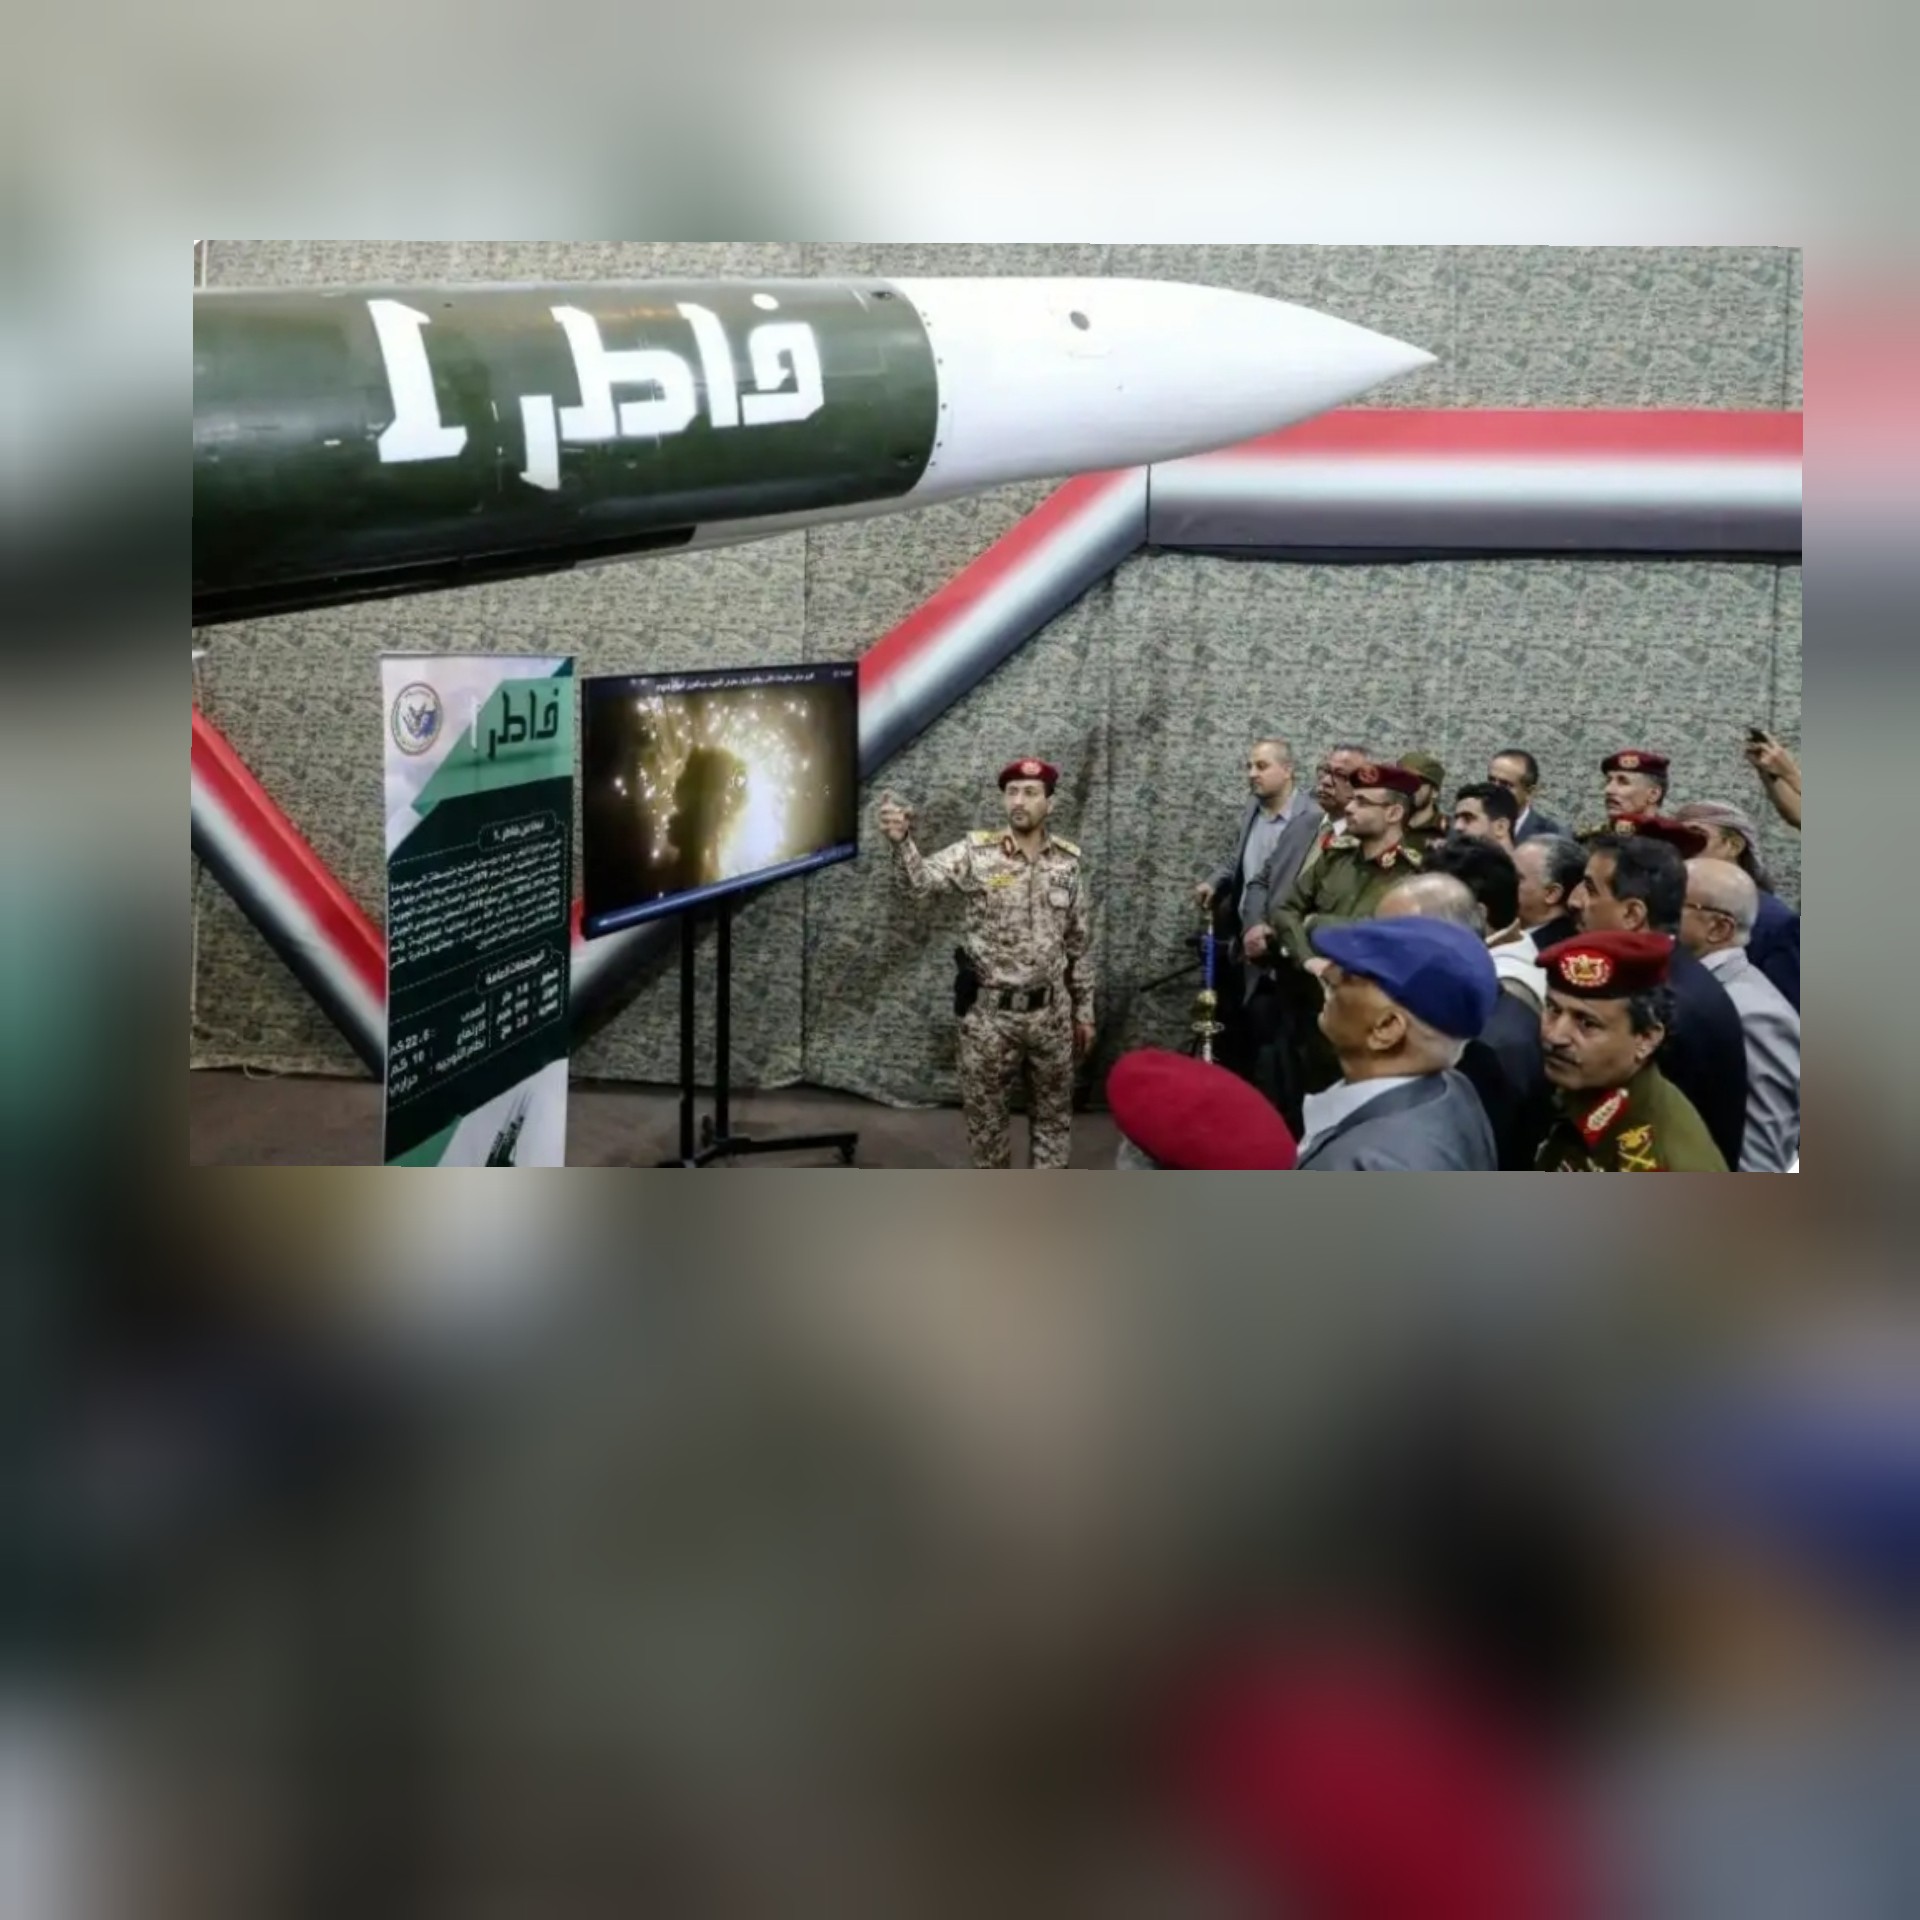 الكشف عن صواريخ متطورة لمنظومات الدفاع الجوي وبخبرات يمنية بحتة واضافة نوعية في القدرات الدفاعية اليمنية, صور وفيديو